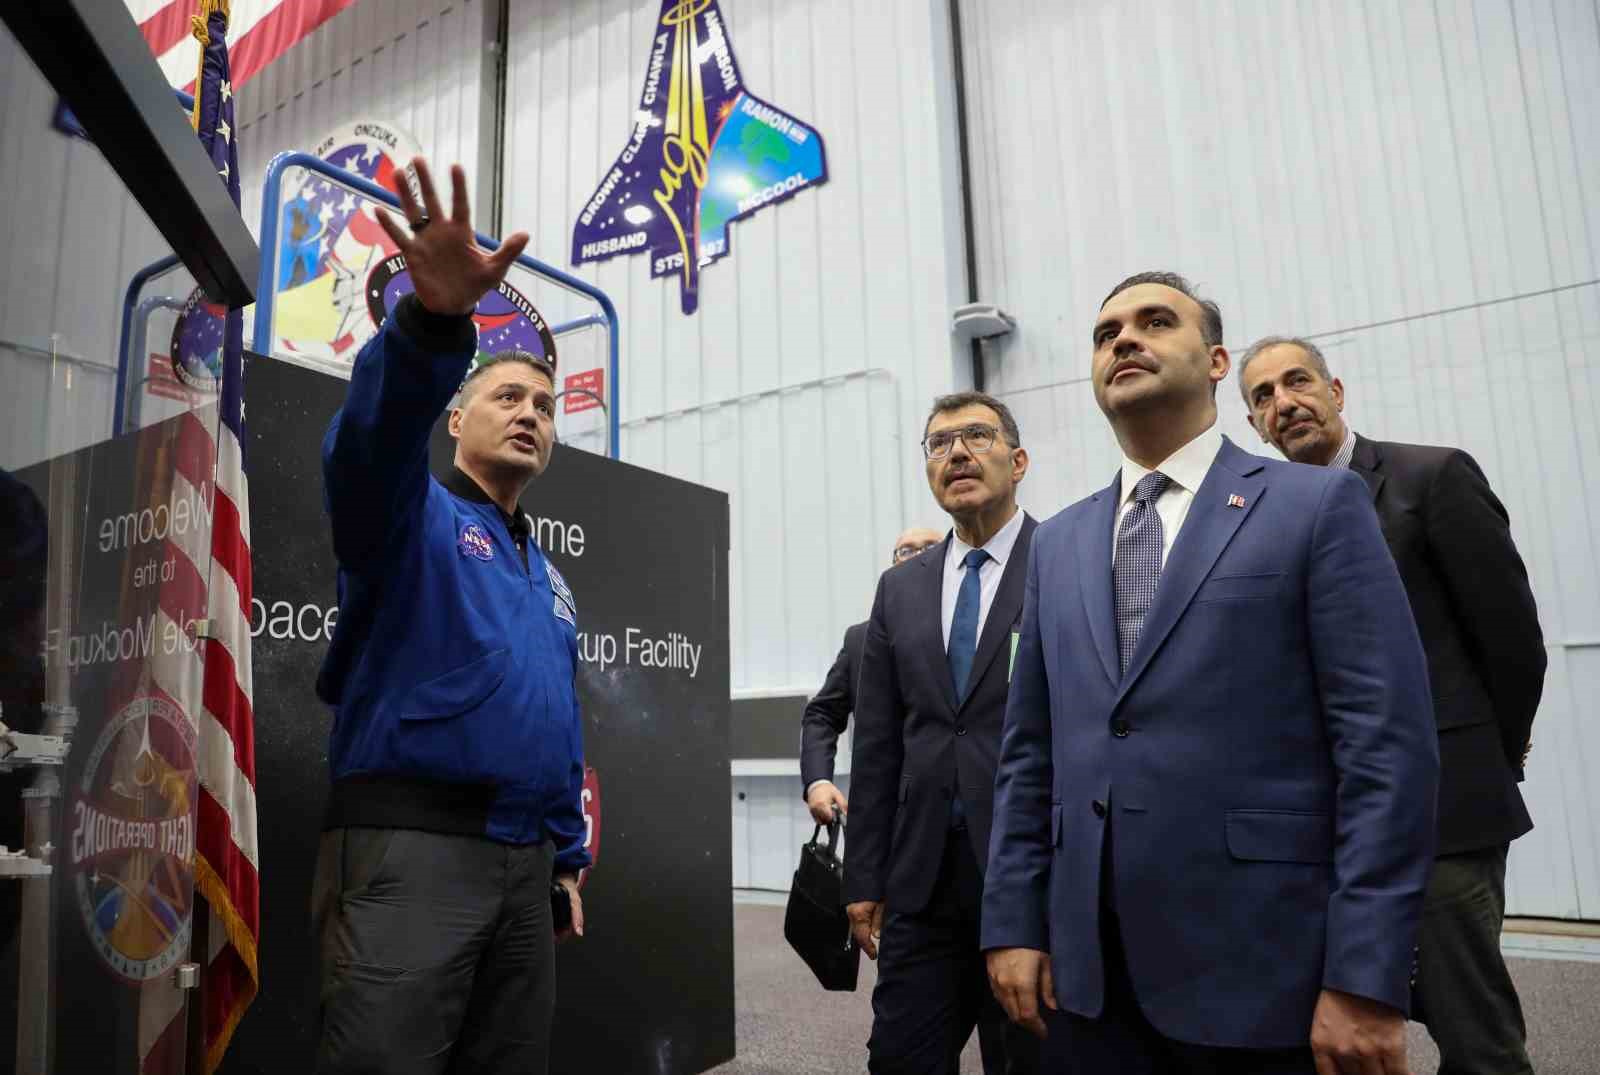 Milli Eğitim Bakanı Kacır, Nasa Uzay Merkezi’ni ziyaret ettiğinde yaşanan olayları tamamen anlattı